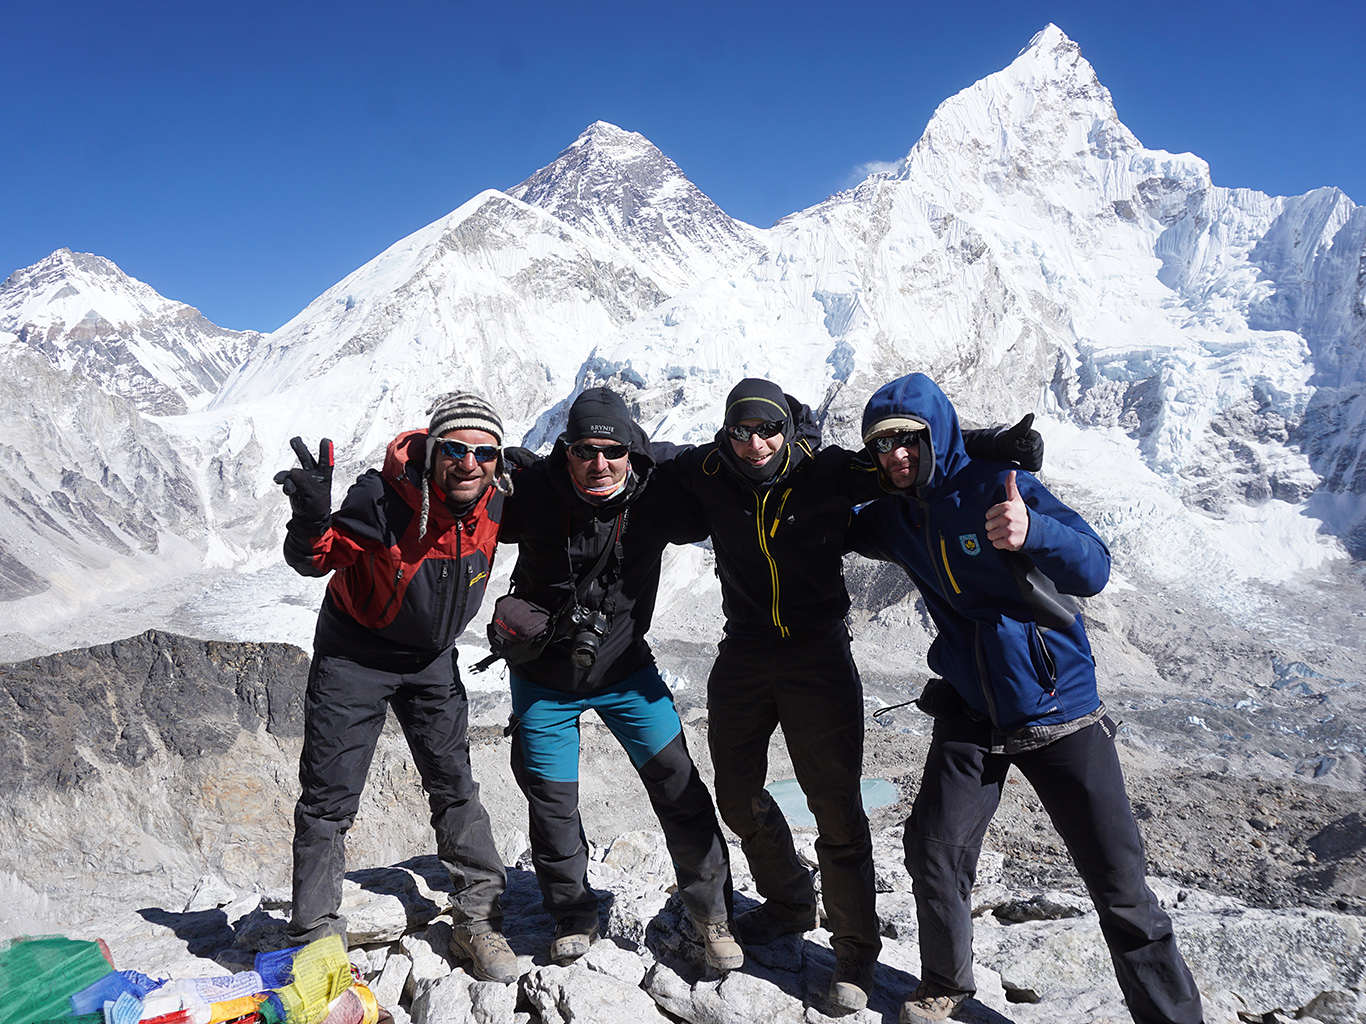 Vrcholová radost na Kala Pattaru, v pozadí Khumbutse, Everest, Nuptse